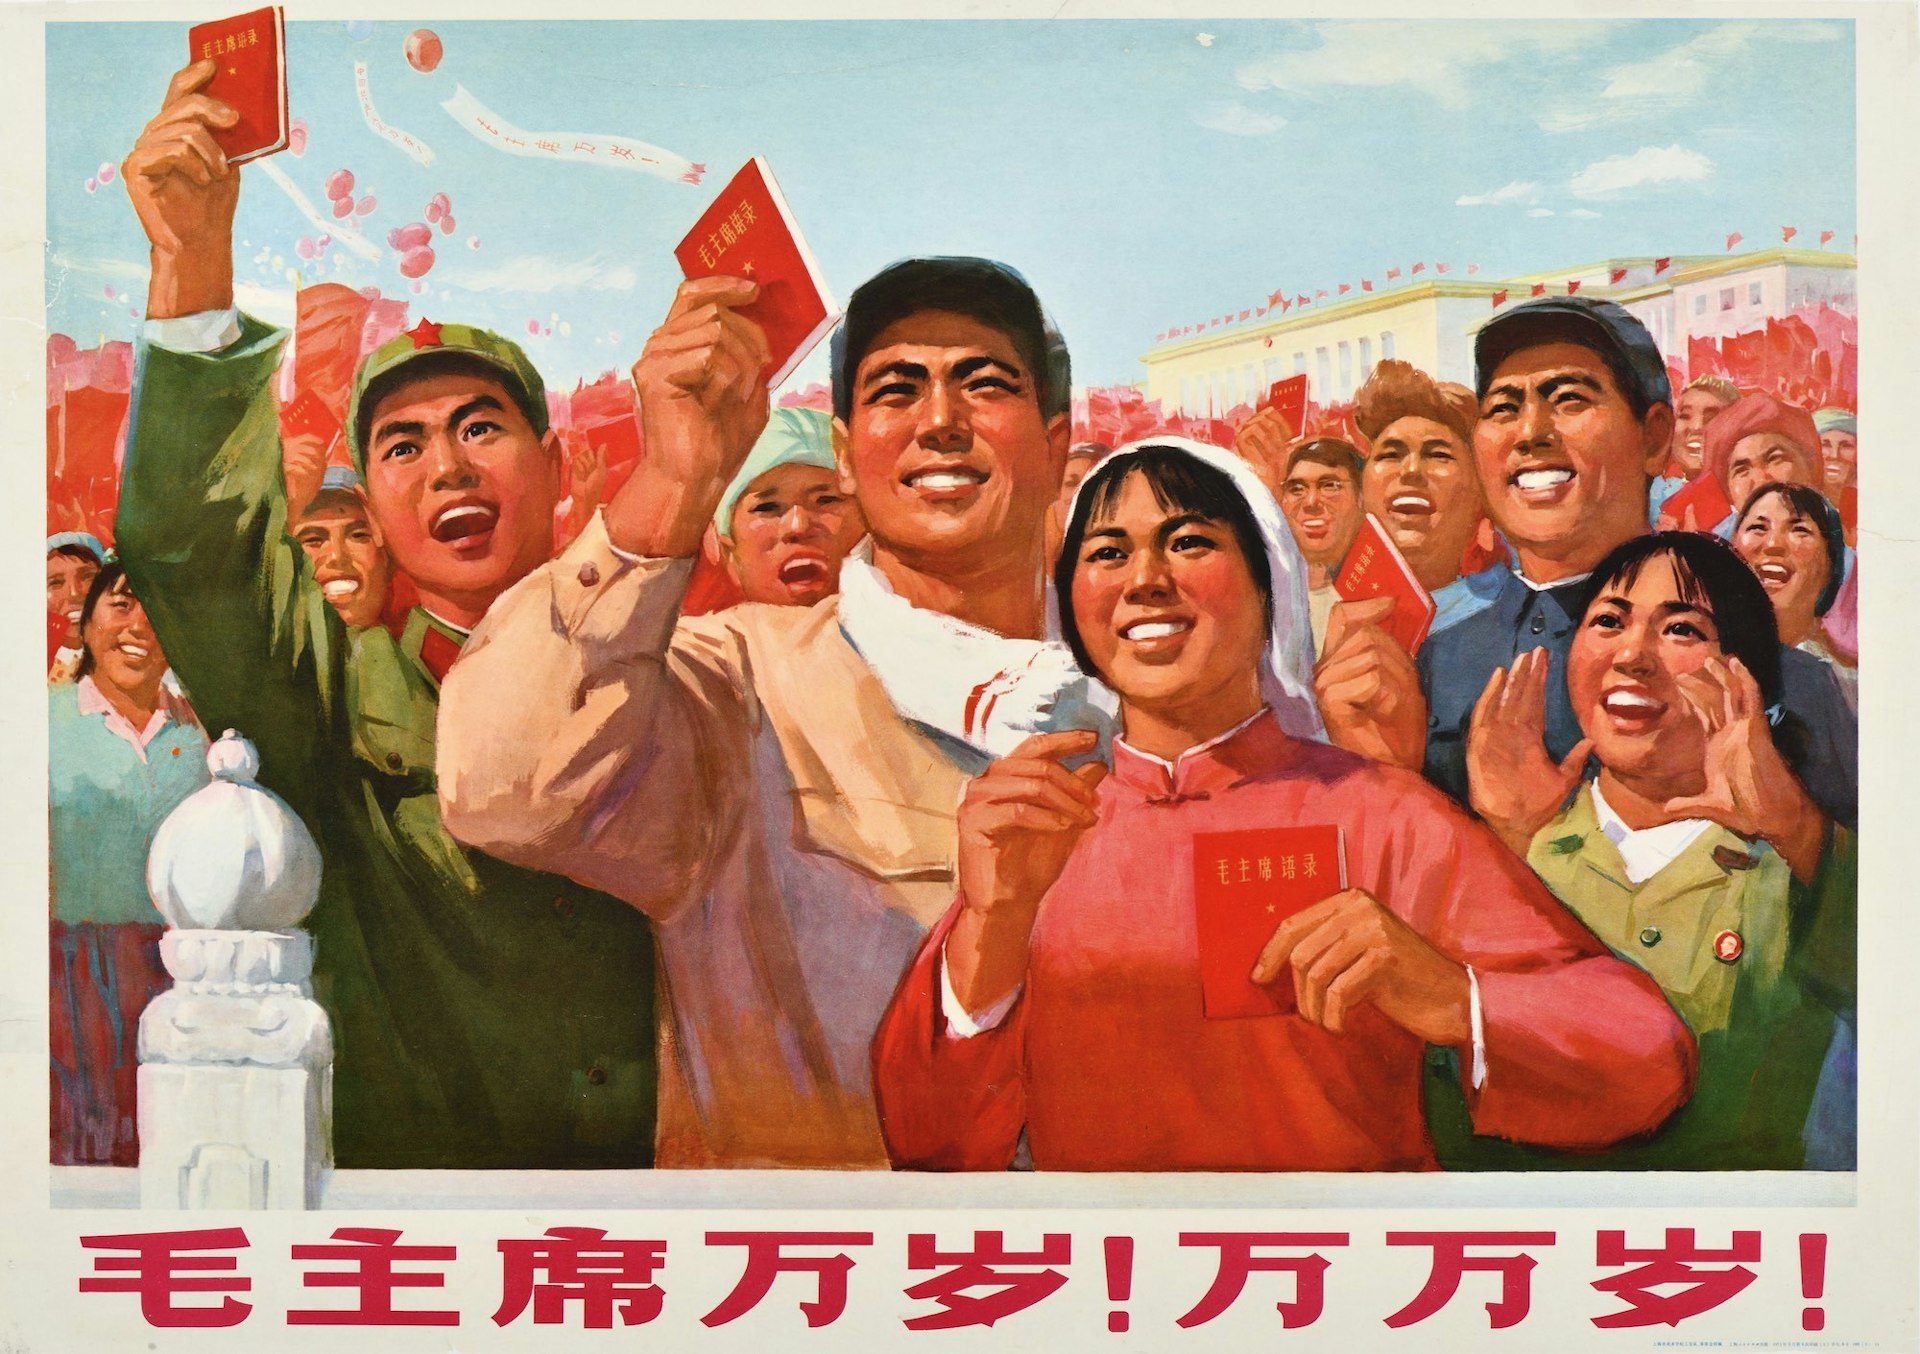 A visual history of Chinese propaganda